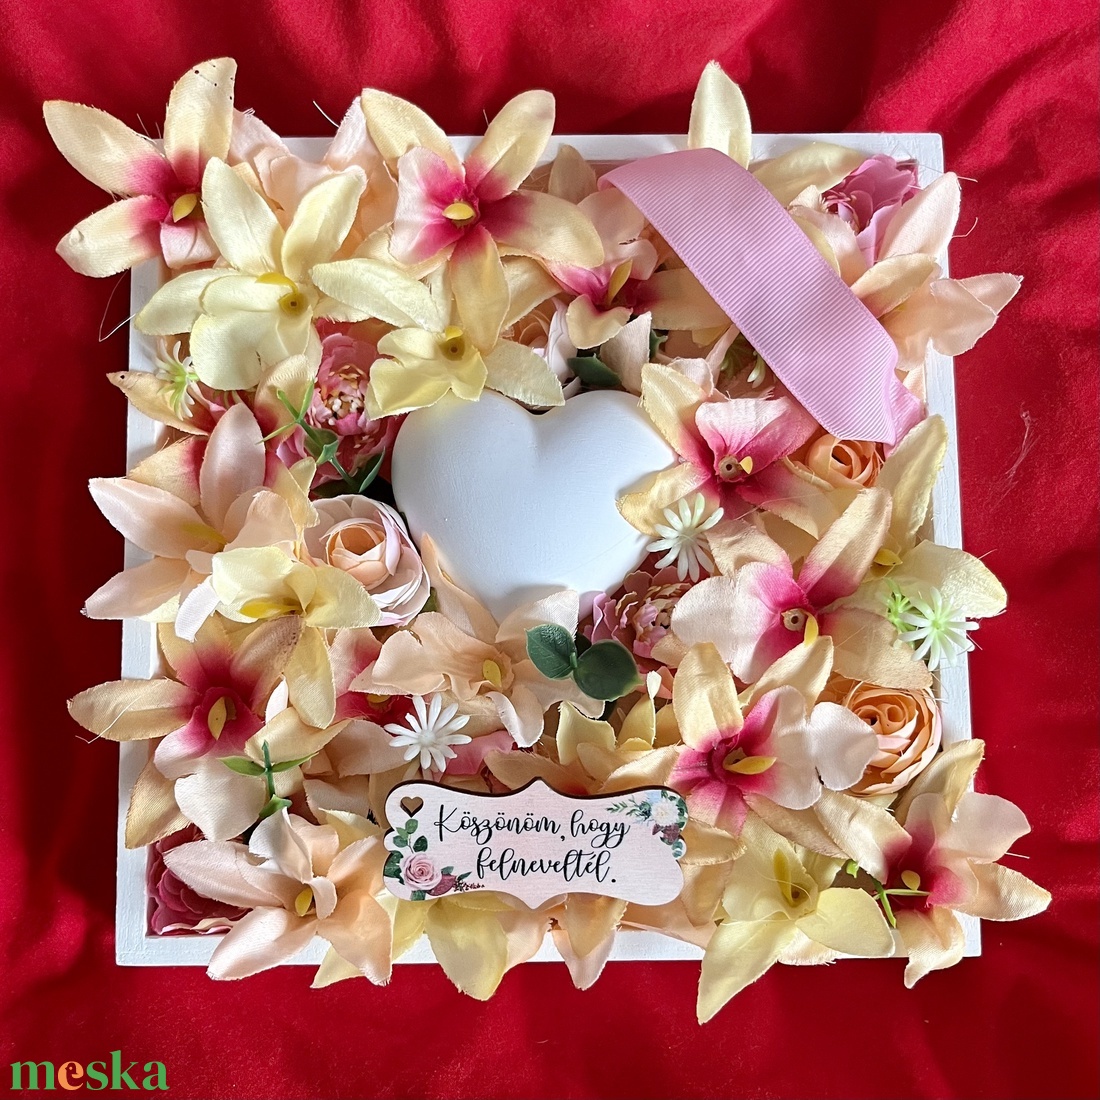 Szülőköszöntő ajándék virág box szívvel, feliratos táblával - sárga - esküvő - emlék & ajándék - szülőköszöntő ajándék - Meska.hu